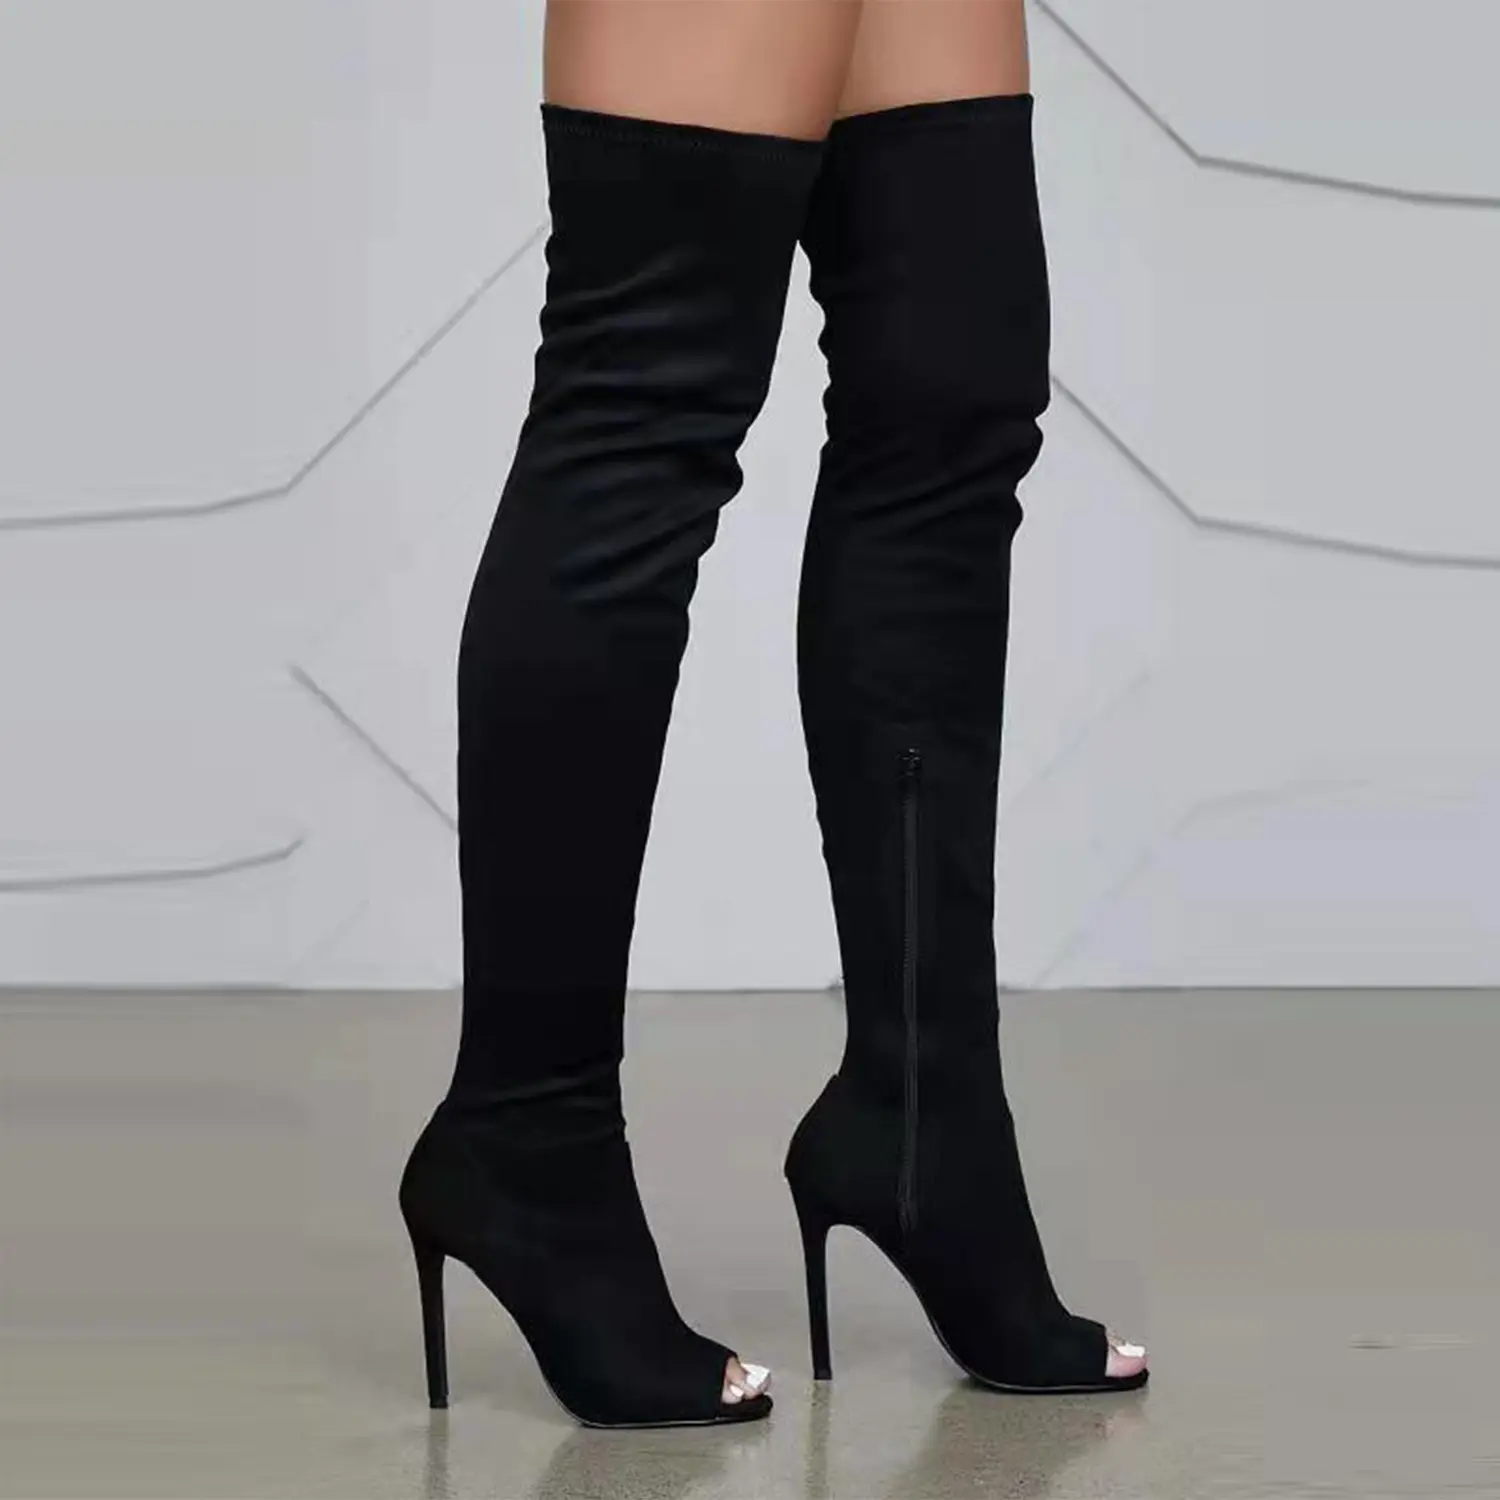 2023 модные женские сапоги, зимние сапоги выше колена на высоком каблуке-шпильке, сапоги до бедер из спандекса для женщин